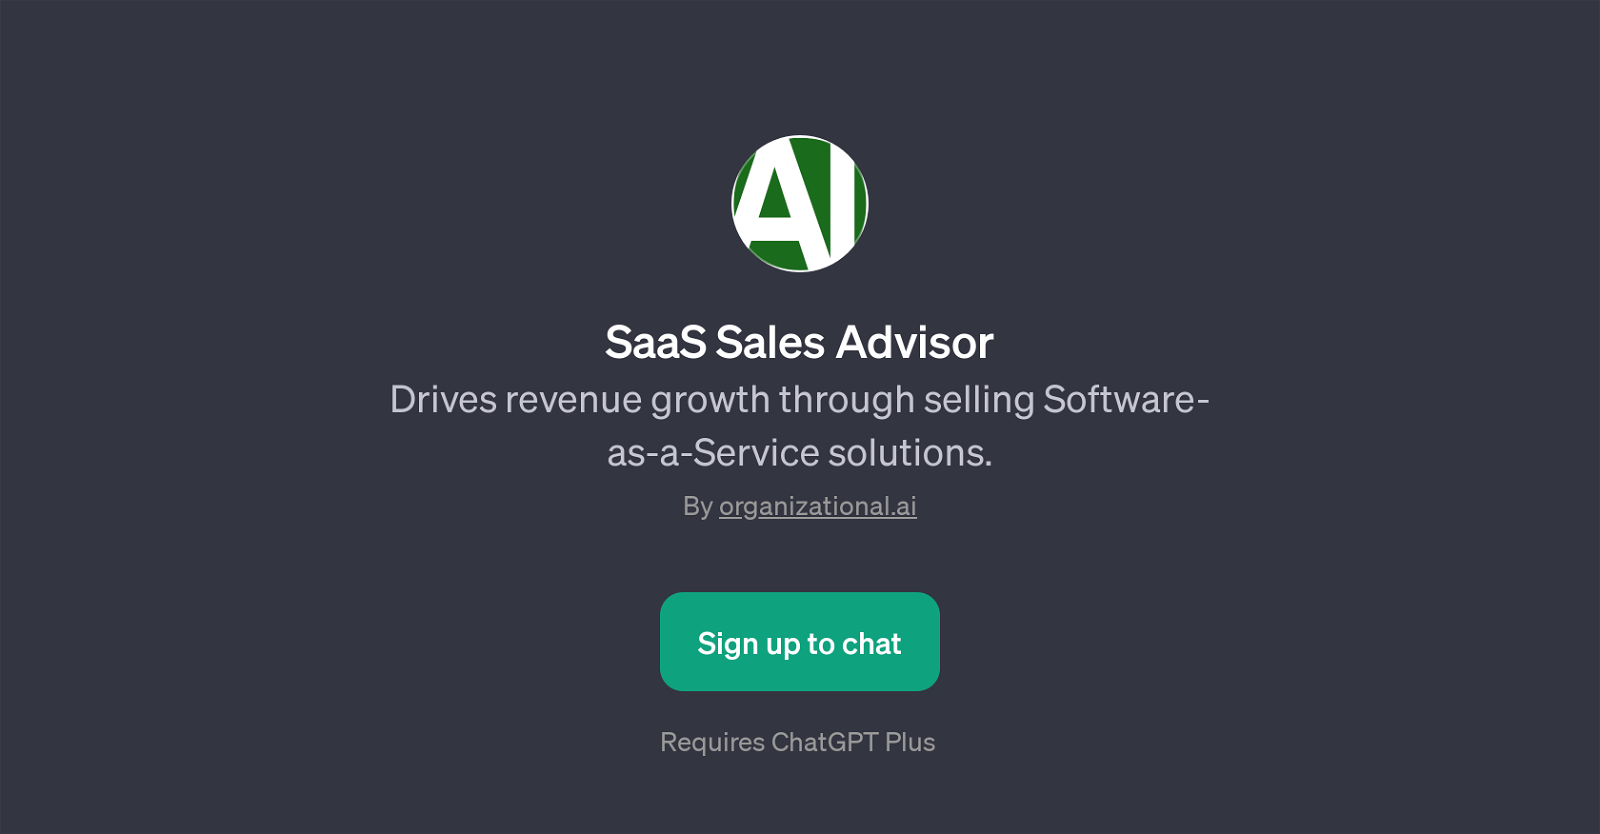 SaaS Sales Advisor website